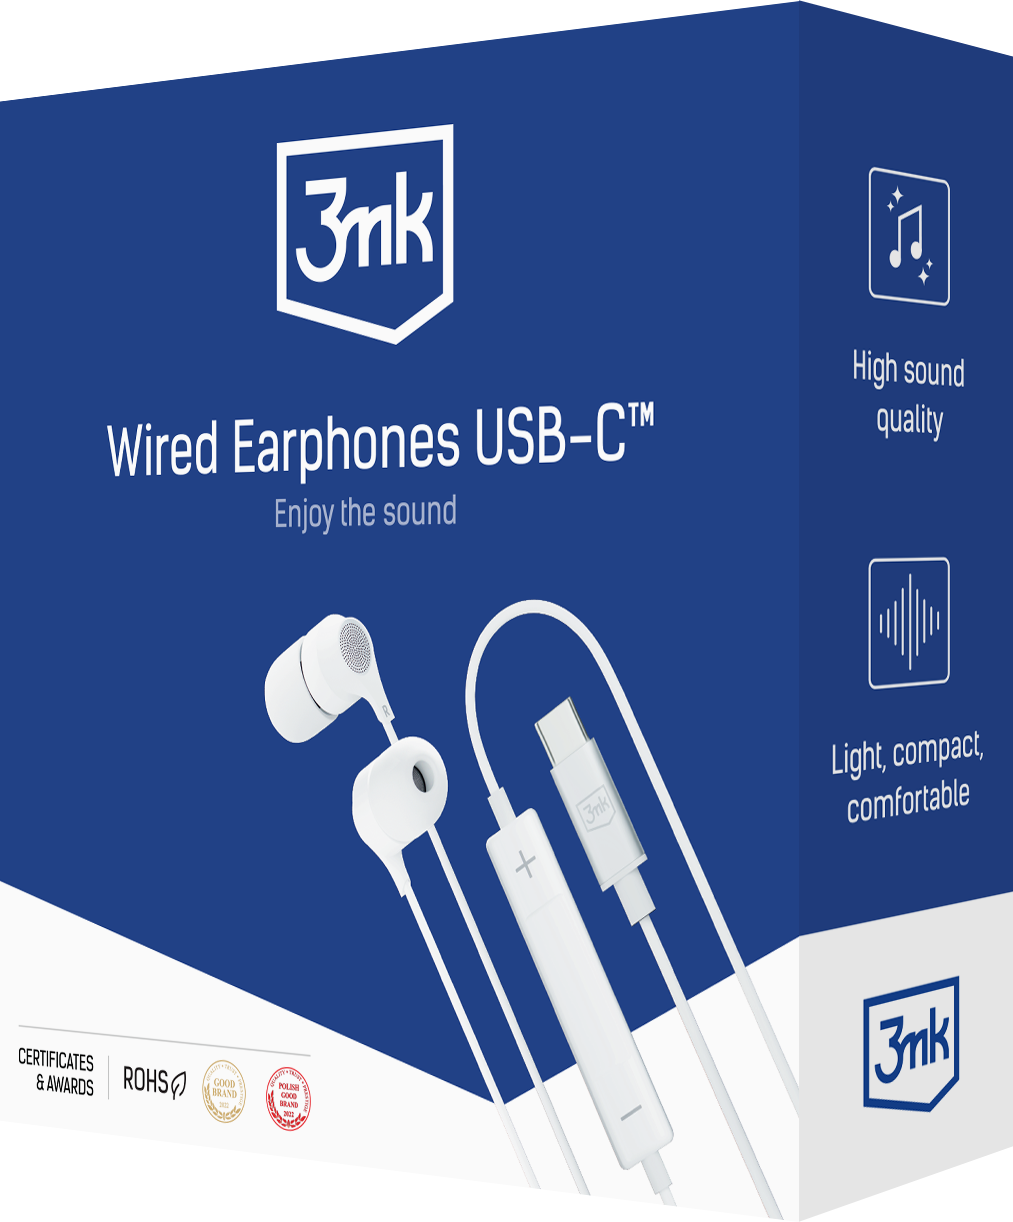 3mk-wired-earphones-usb-c_-packsho-v2t